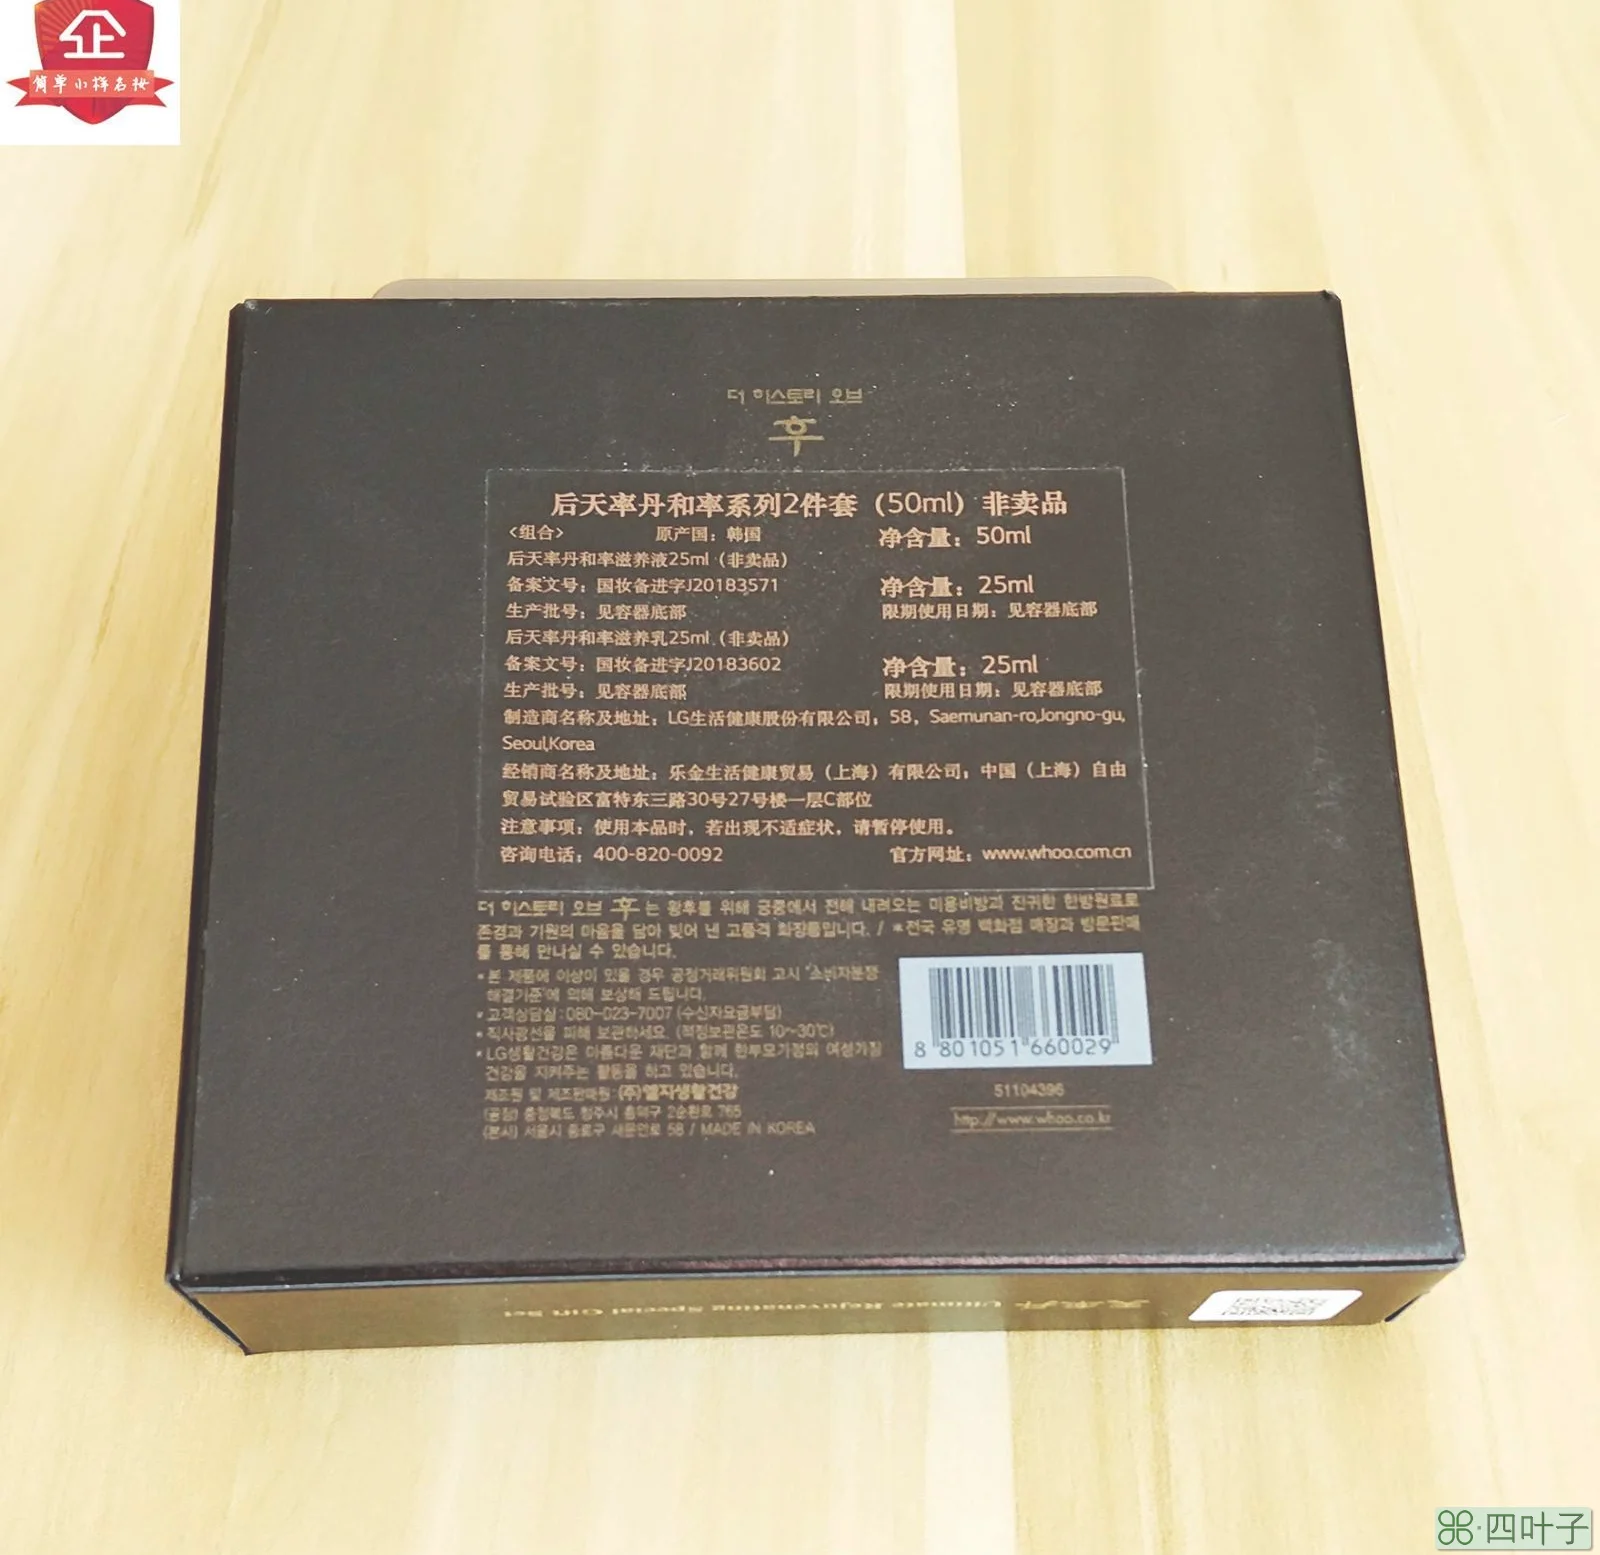 天气丹套盒说明书是中文天气丹套盒说明书怎么是中文